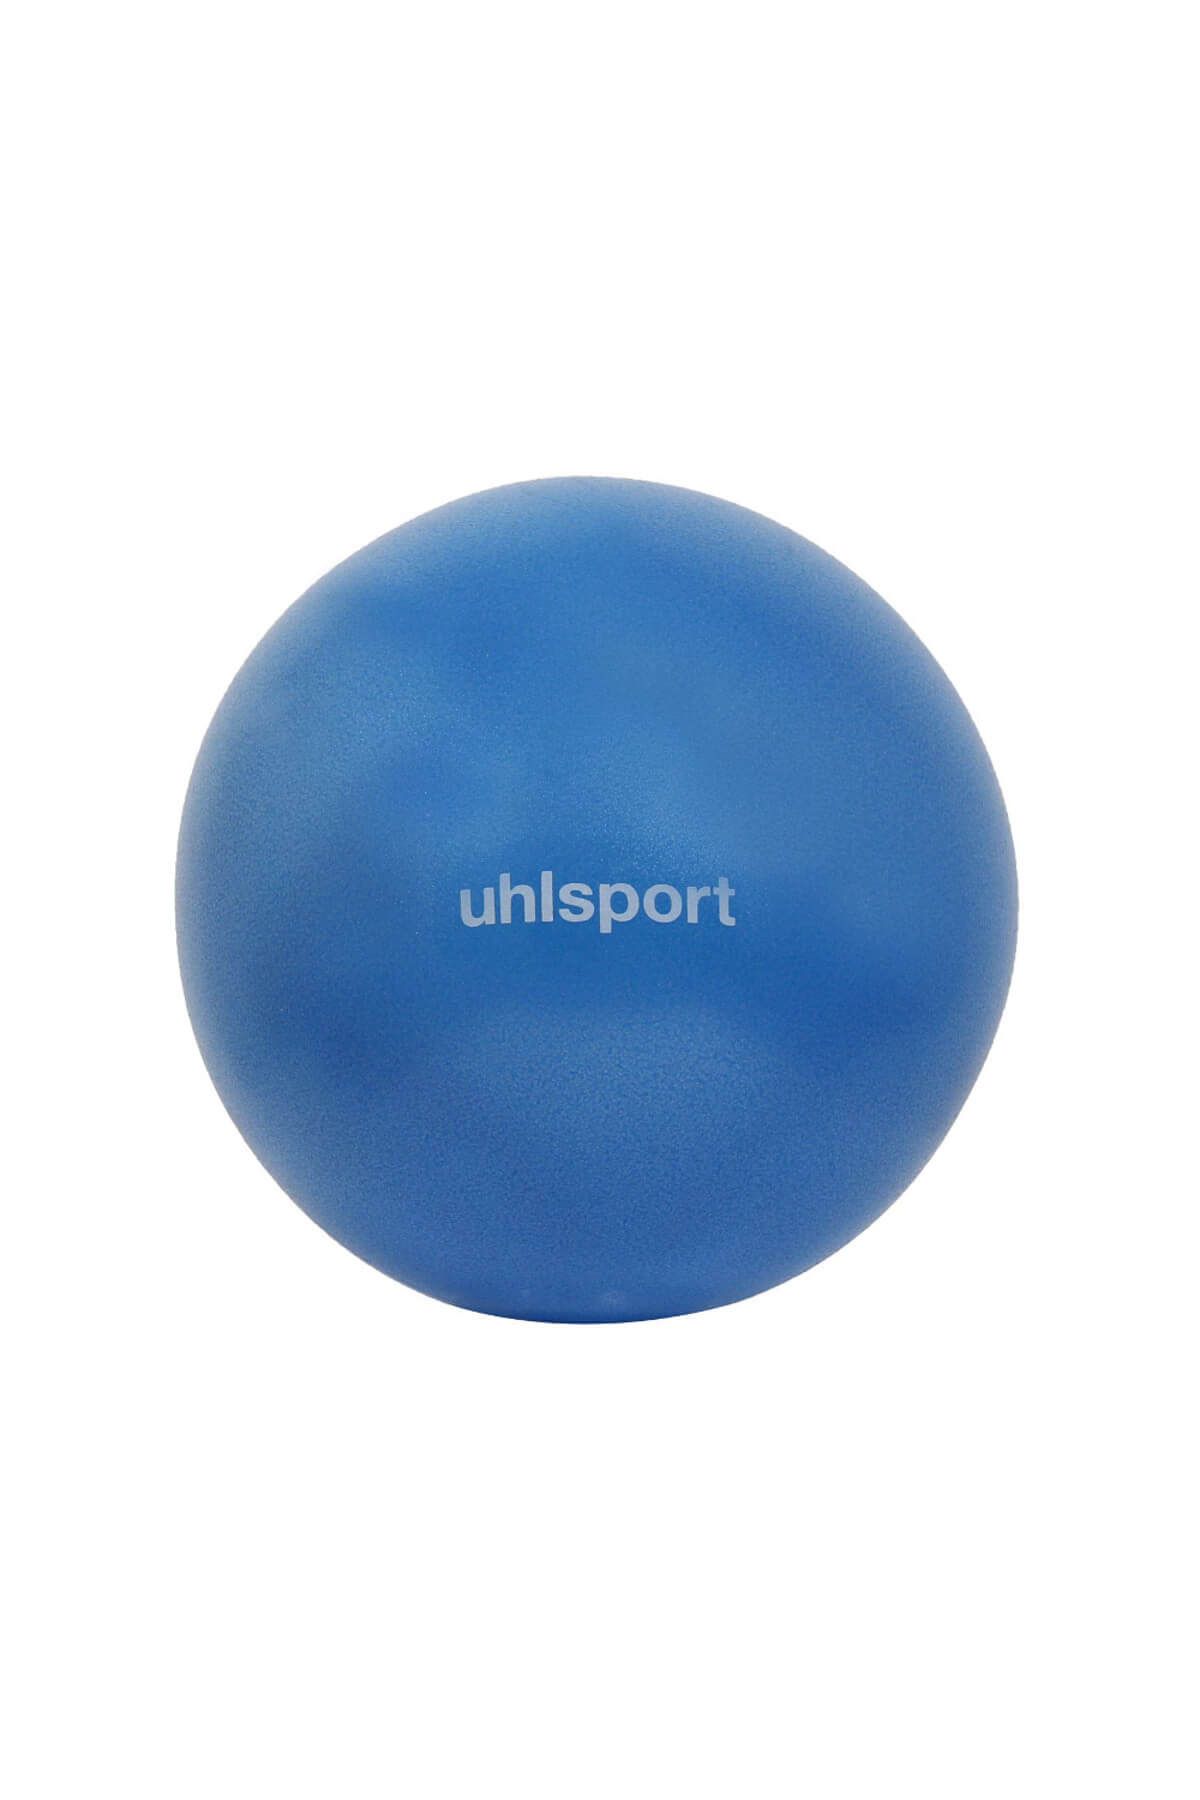 uhlsport OBL-1030 Mini Pilates Topu 30 Cm Mavi